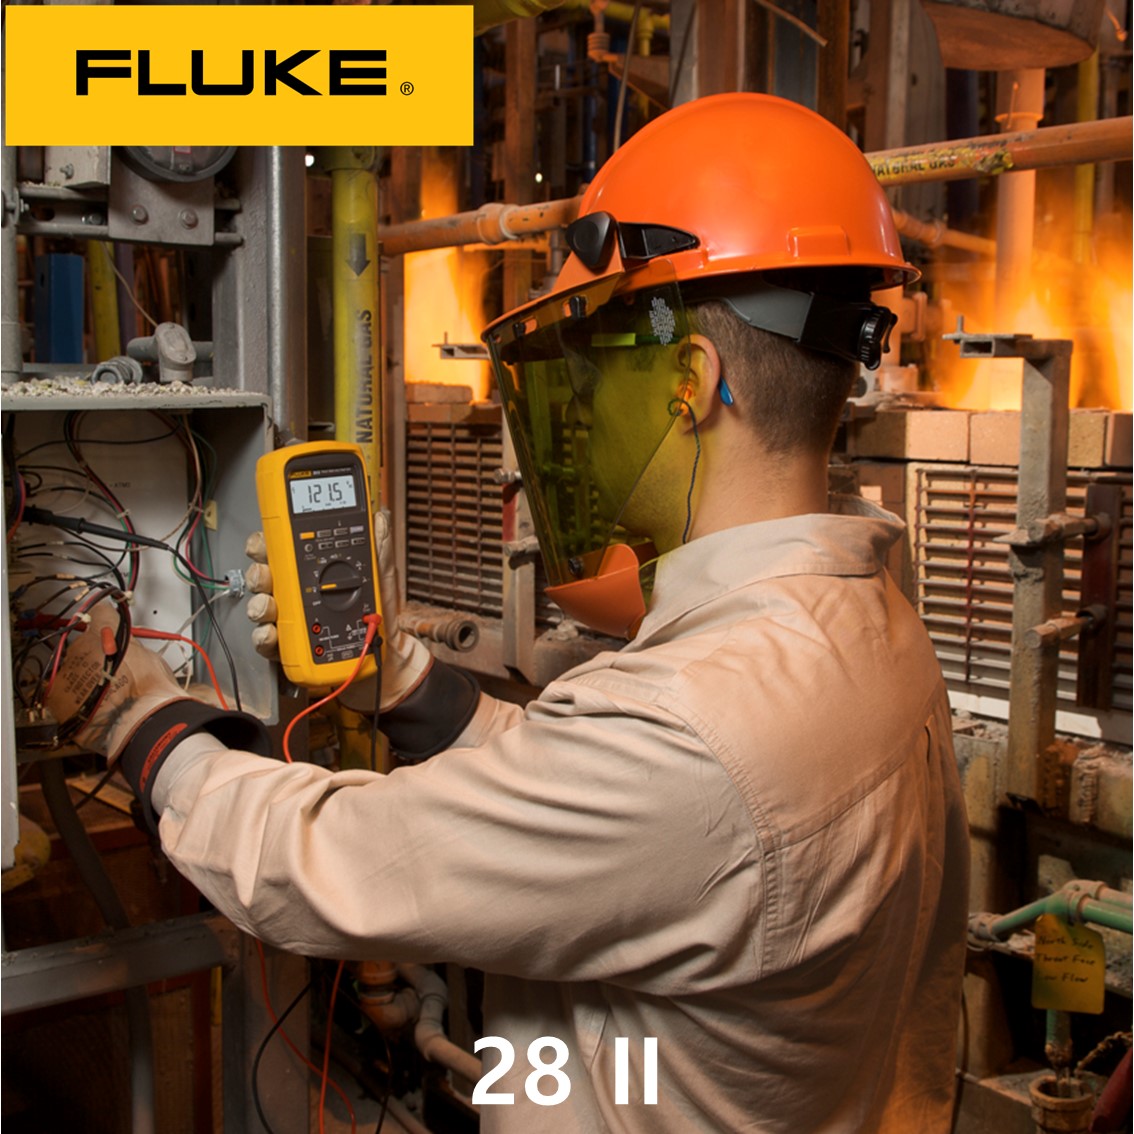 [ FLUKE 28II ] 정품 플루크 방수방진 디지털멀티미터,플루크28 ii, 플루크 282